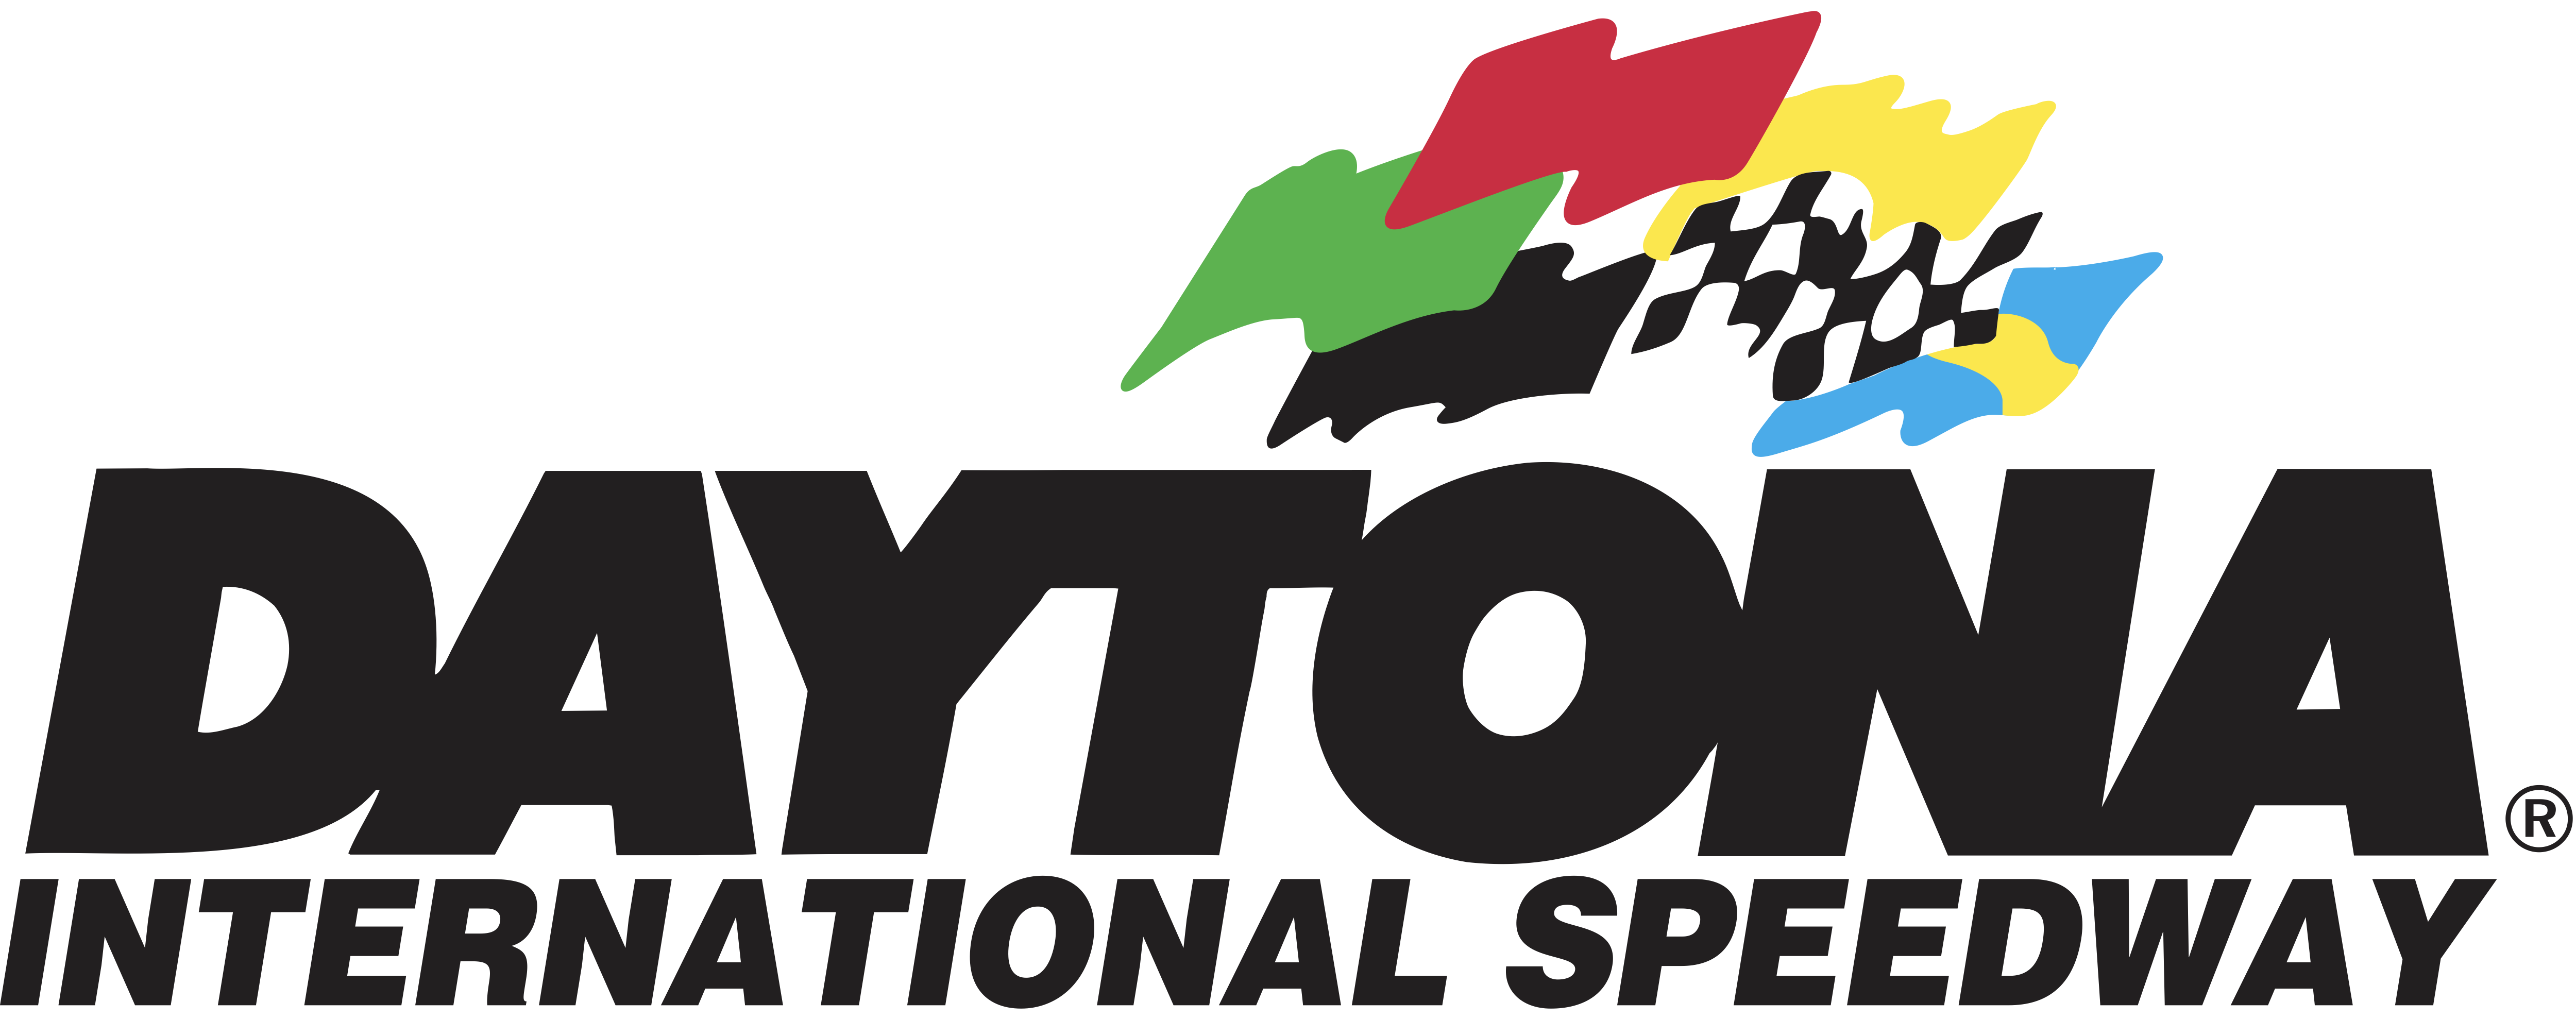 daytona-international-speedway-logo